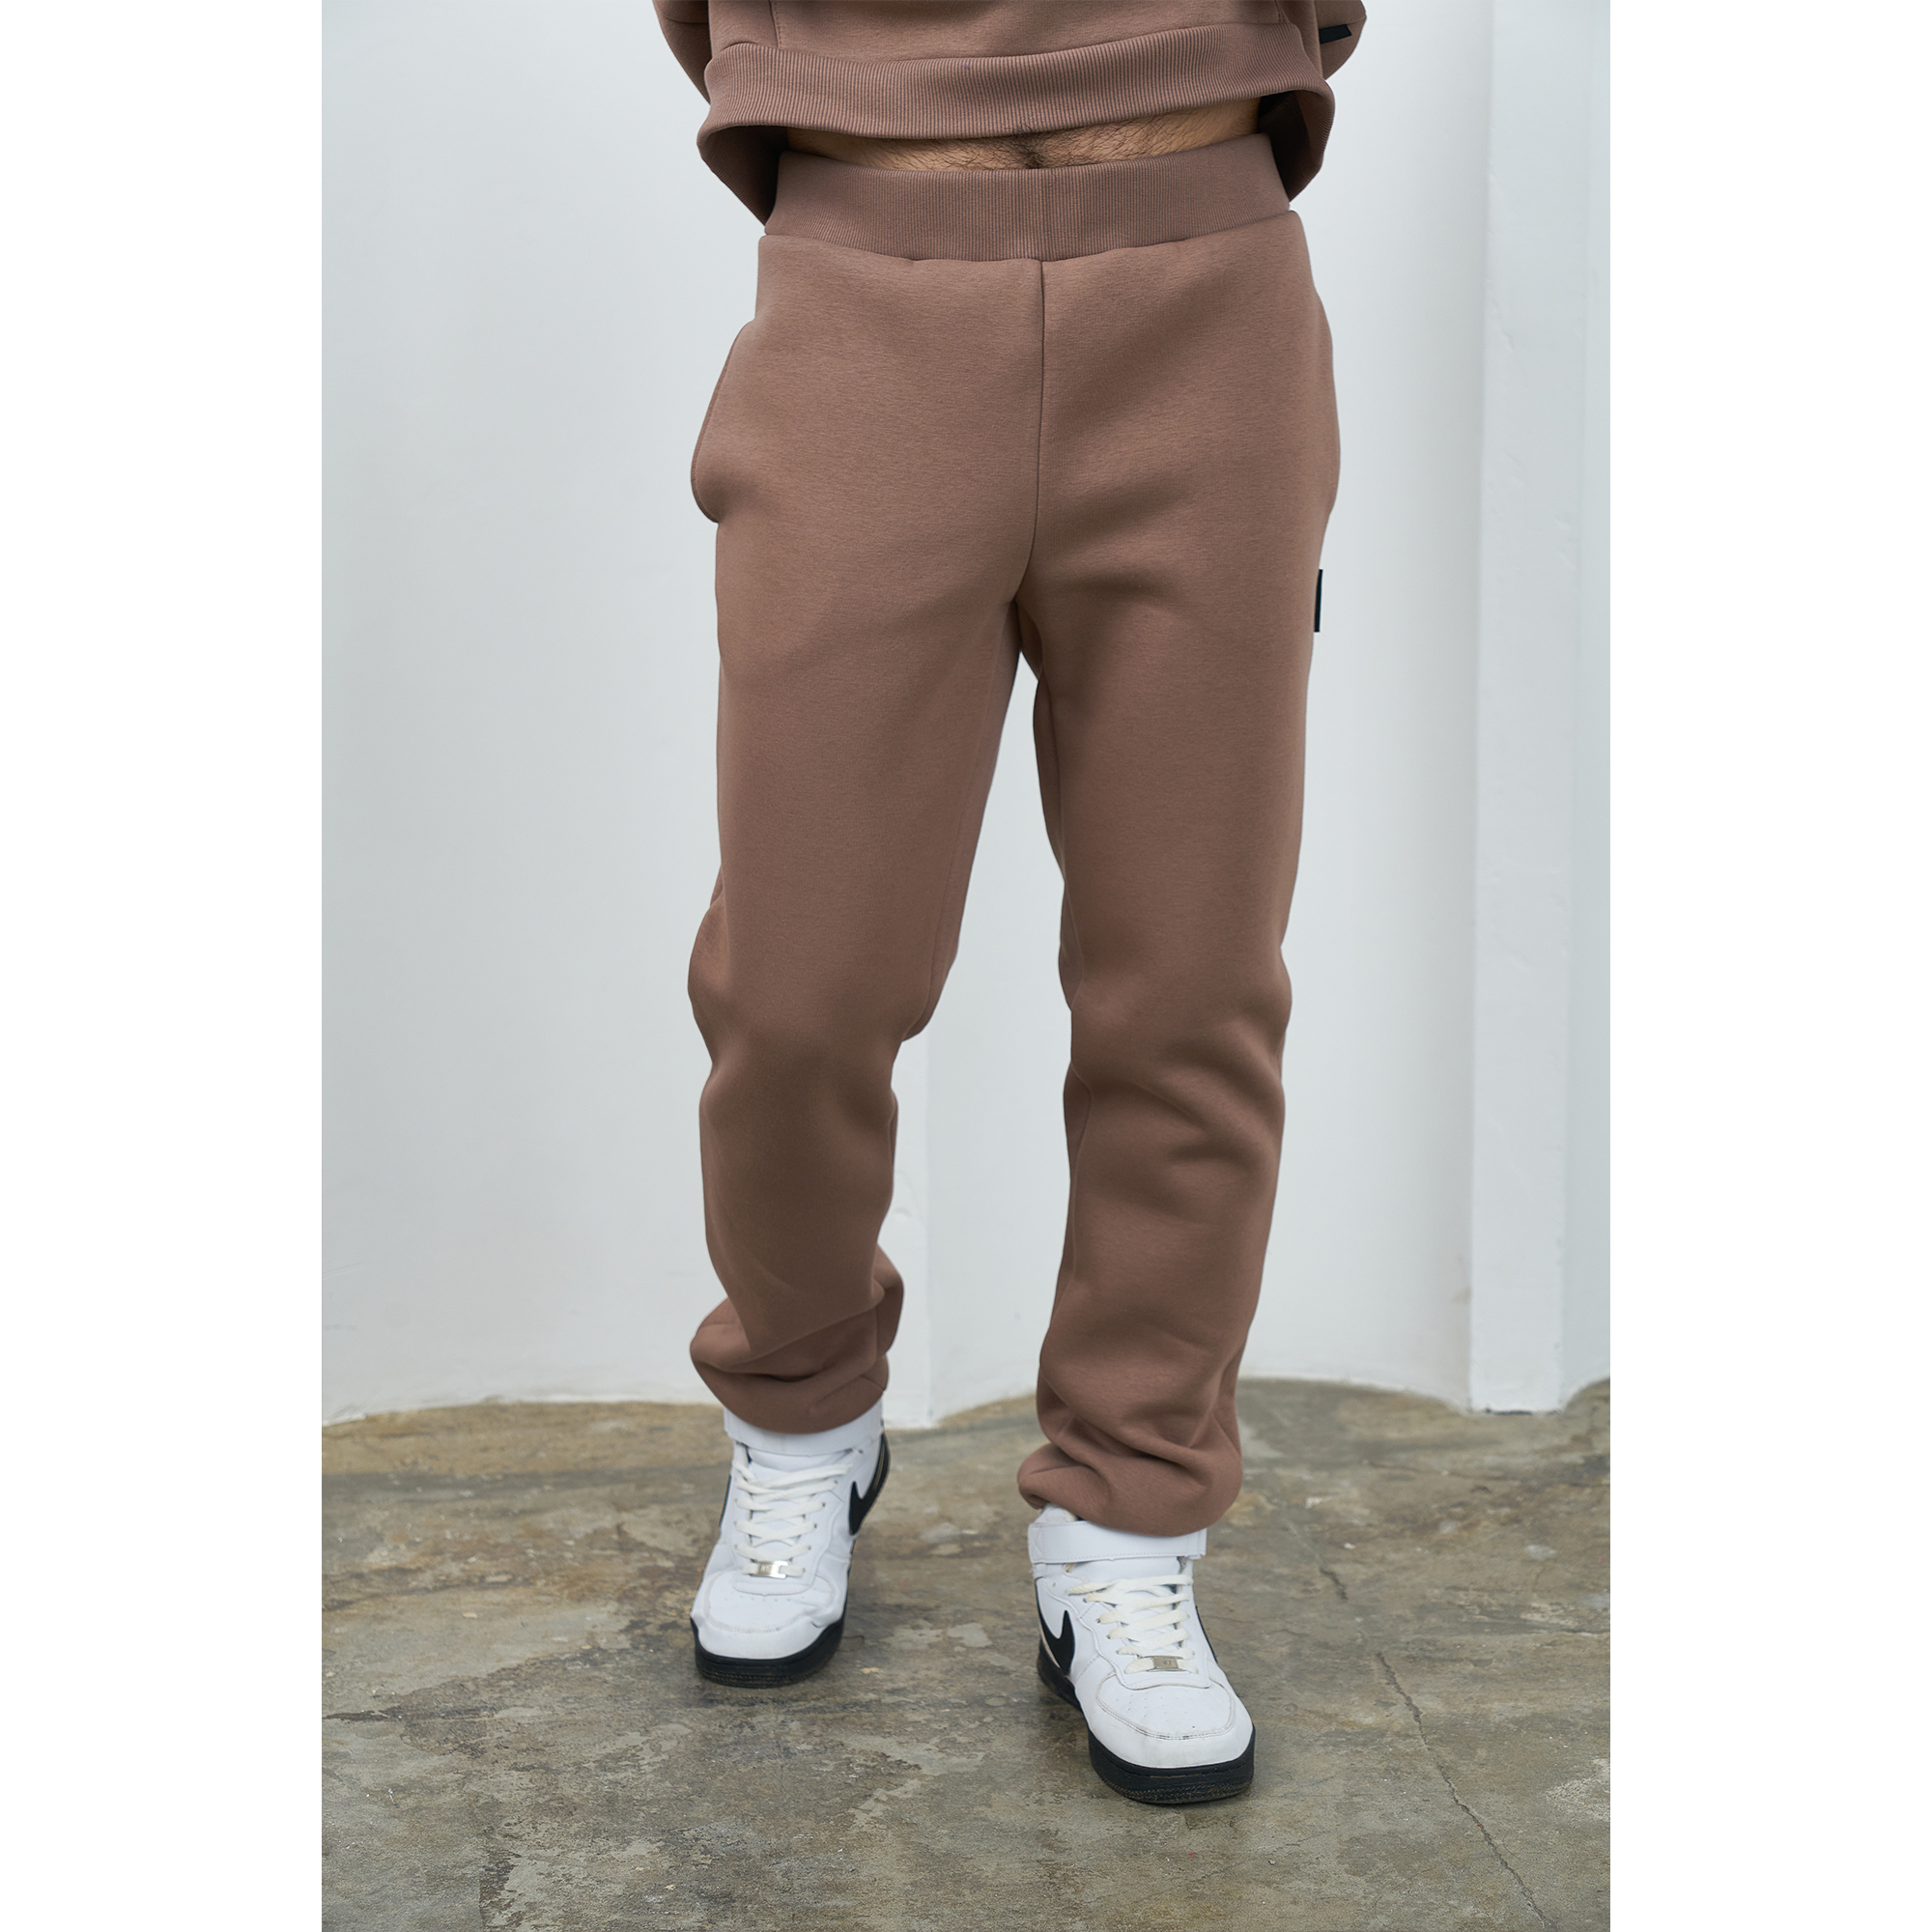 Спортивные брюки мужские Персона Premium БрМ бежевые M/188